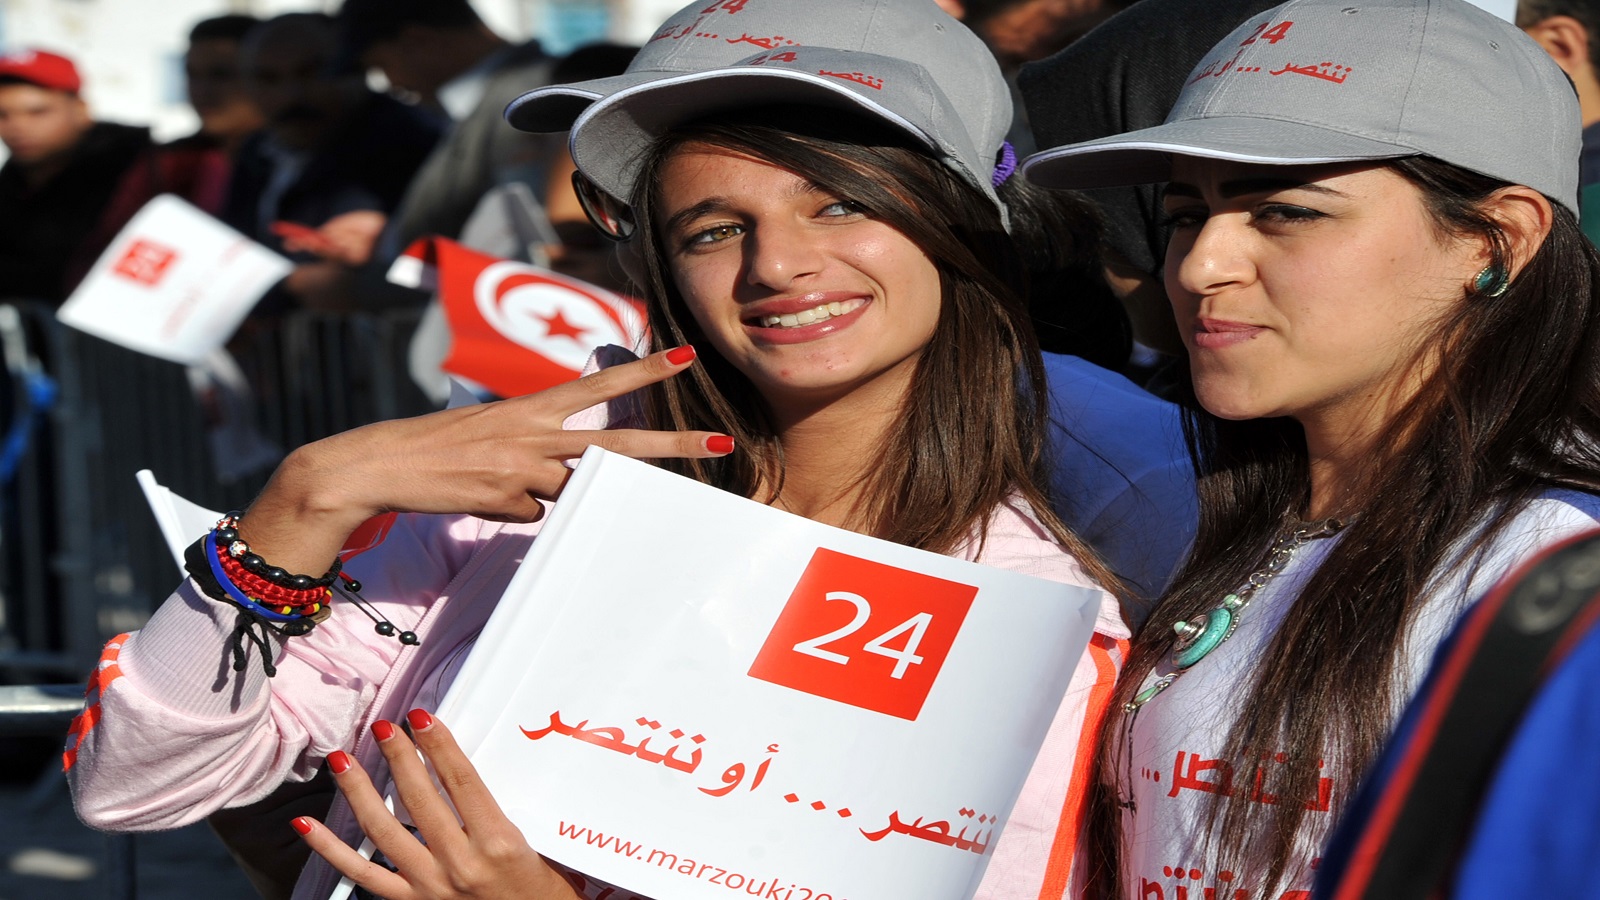 مثقّفو تونس والانتخابات الرئاسية: "هبّوا يا أنصار إيروس!"